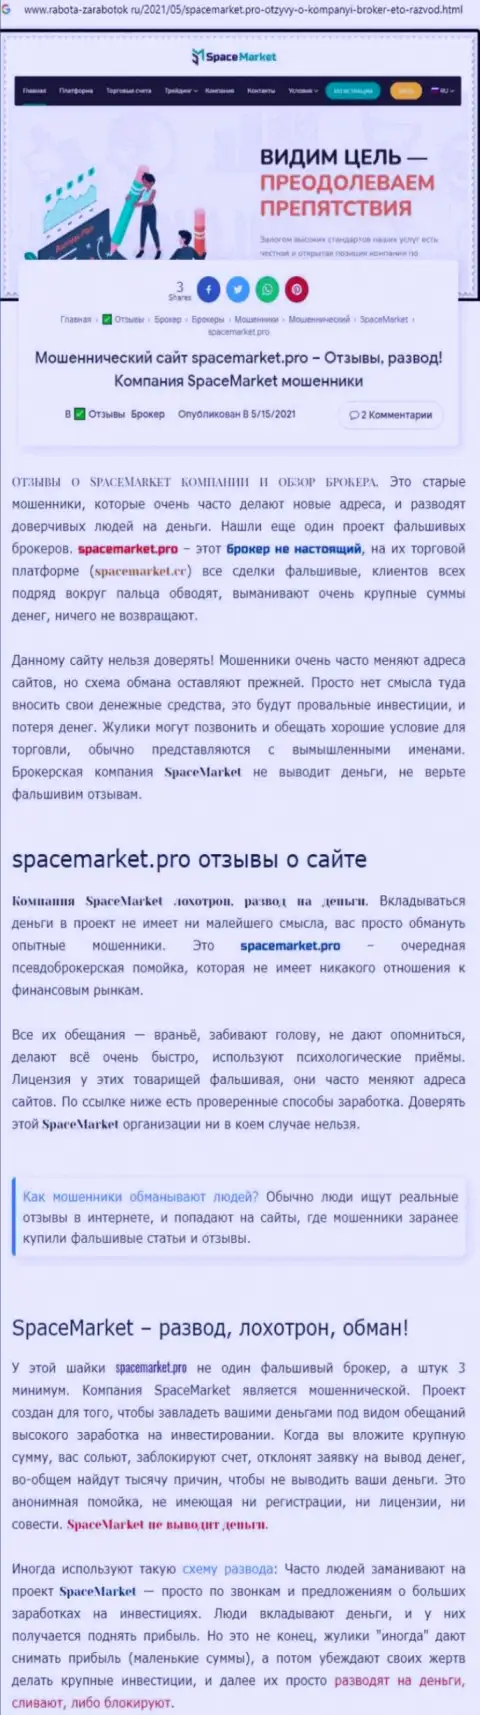 Мошенники SpaceMarket бессовестно оставляют без средств - БУДЬТЕ ВЕСЬМА ВНИМАТЕЛЬНЫ (обзор проделок)